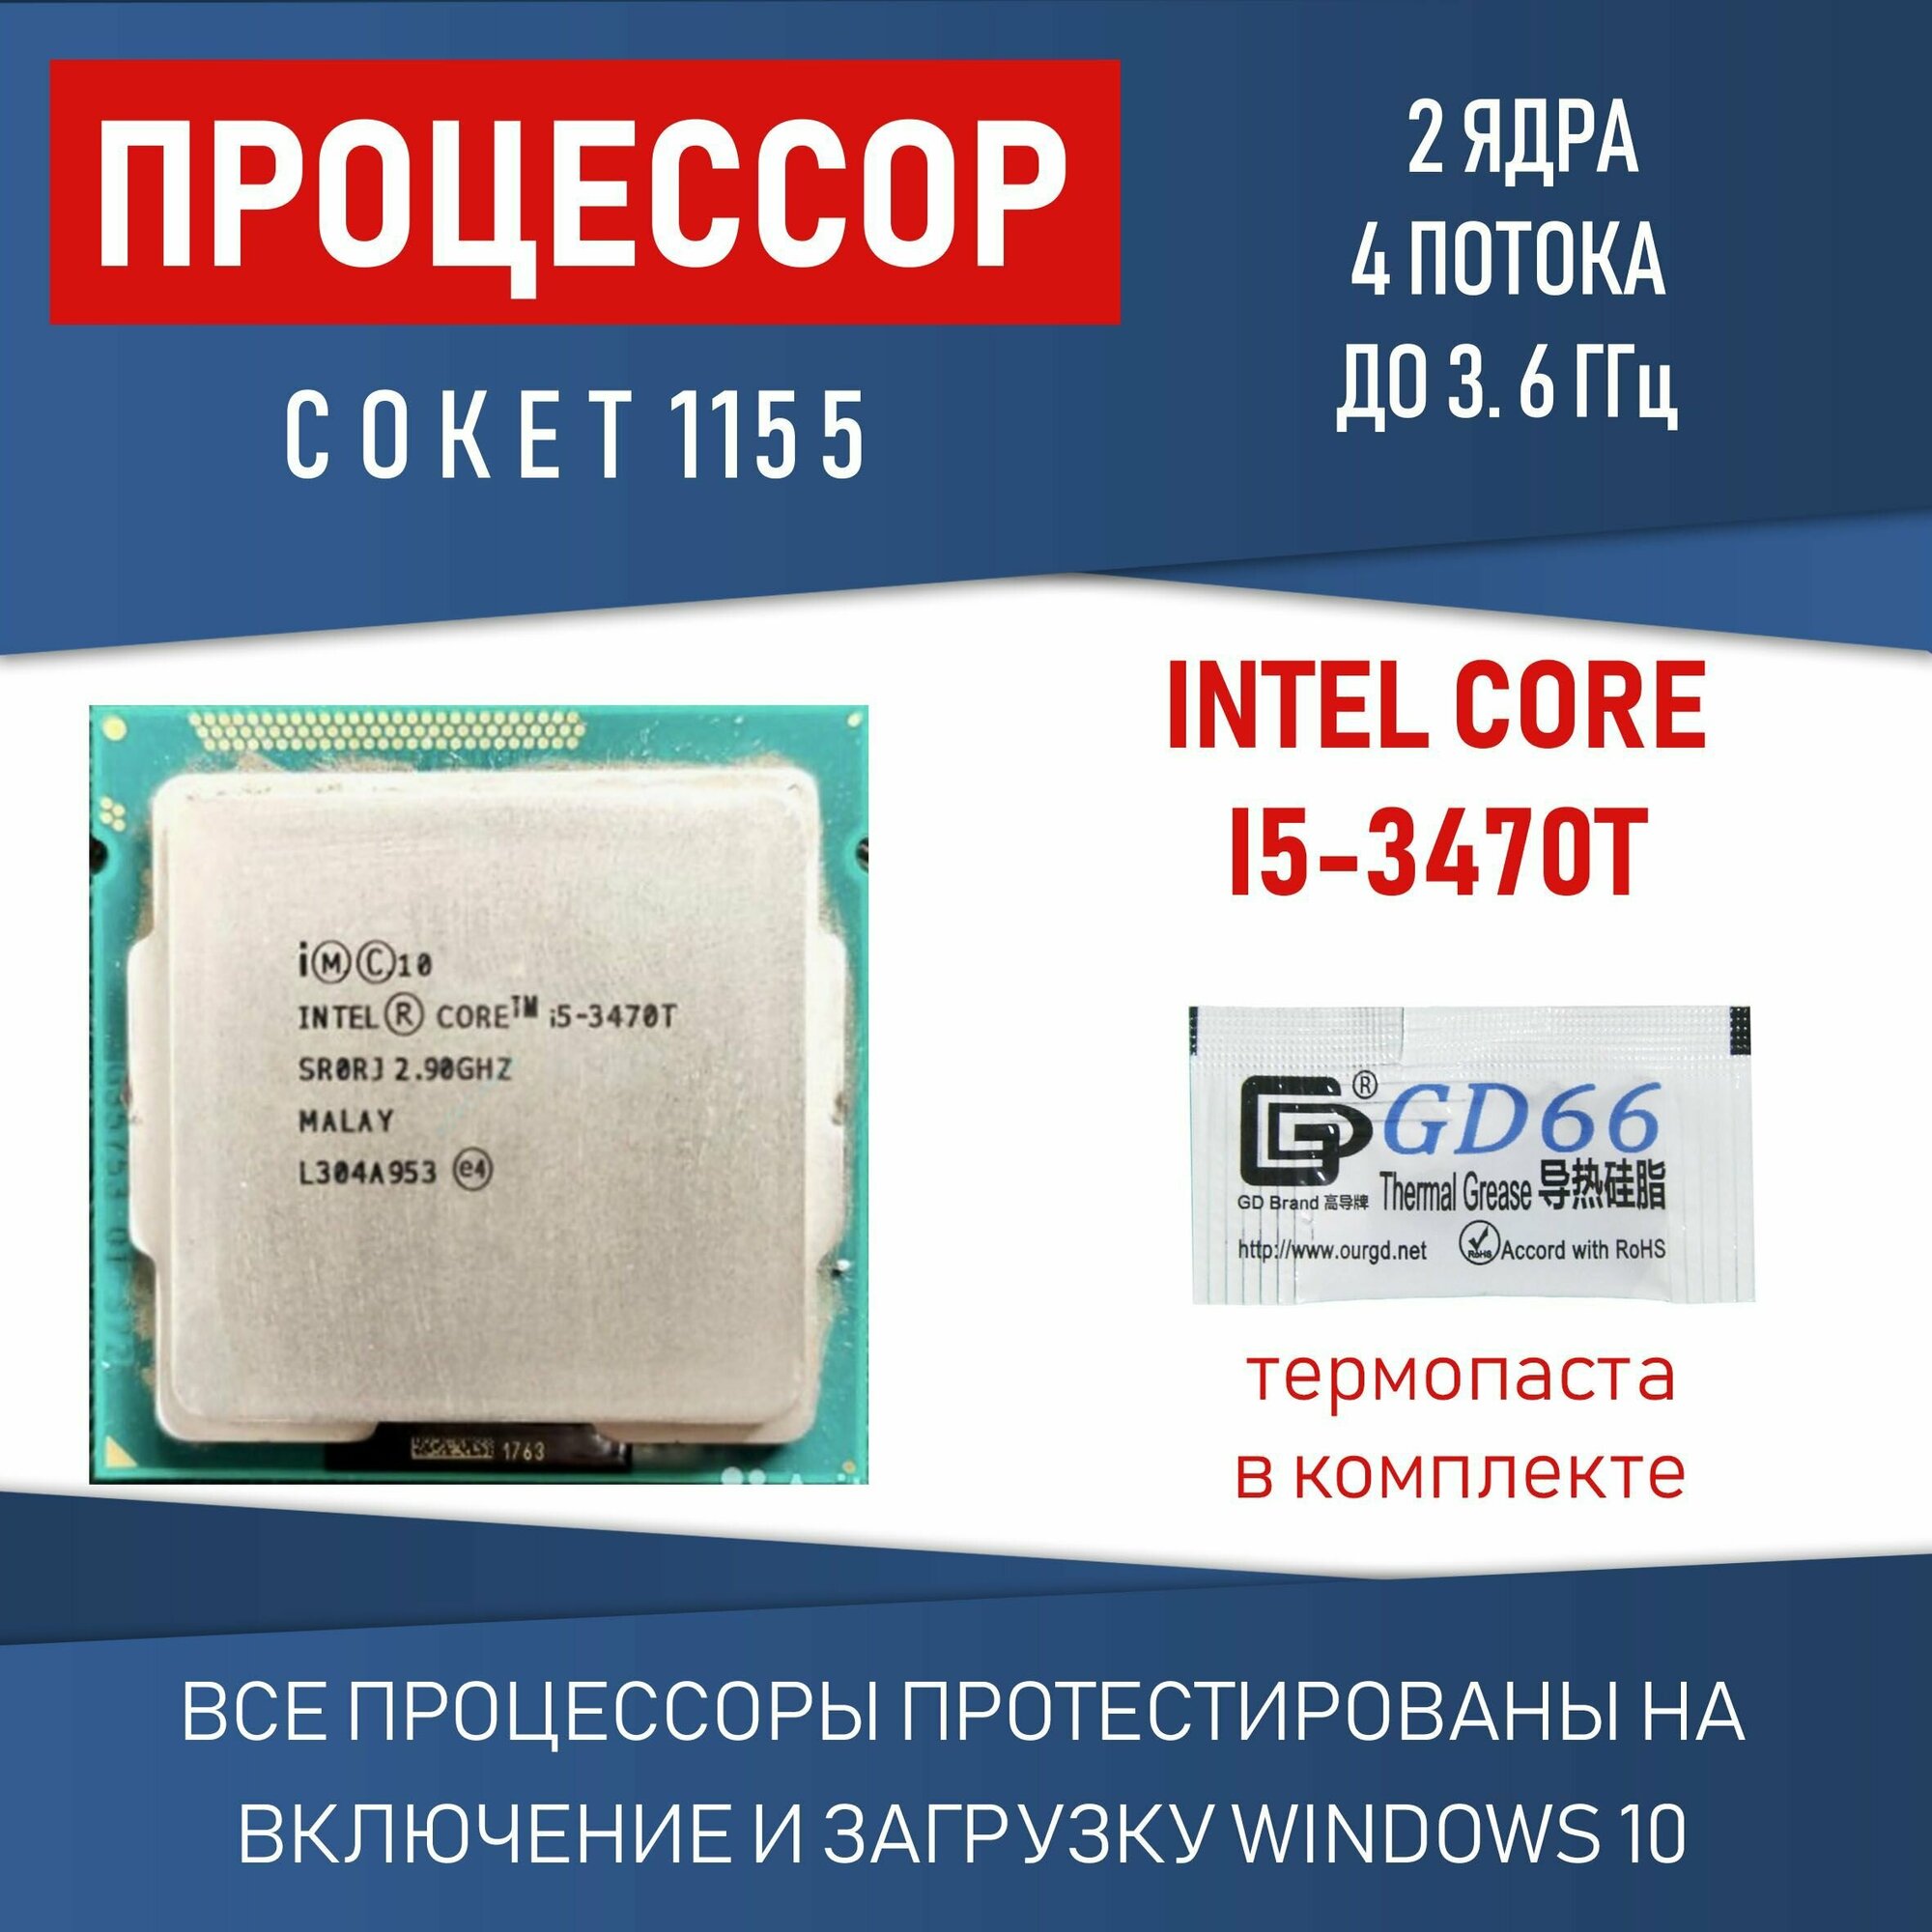 Процессор INTEL CORE I5 3470t сокет 1155 2 ядра 4 потока 35Вт